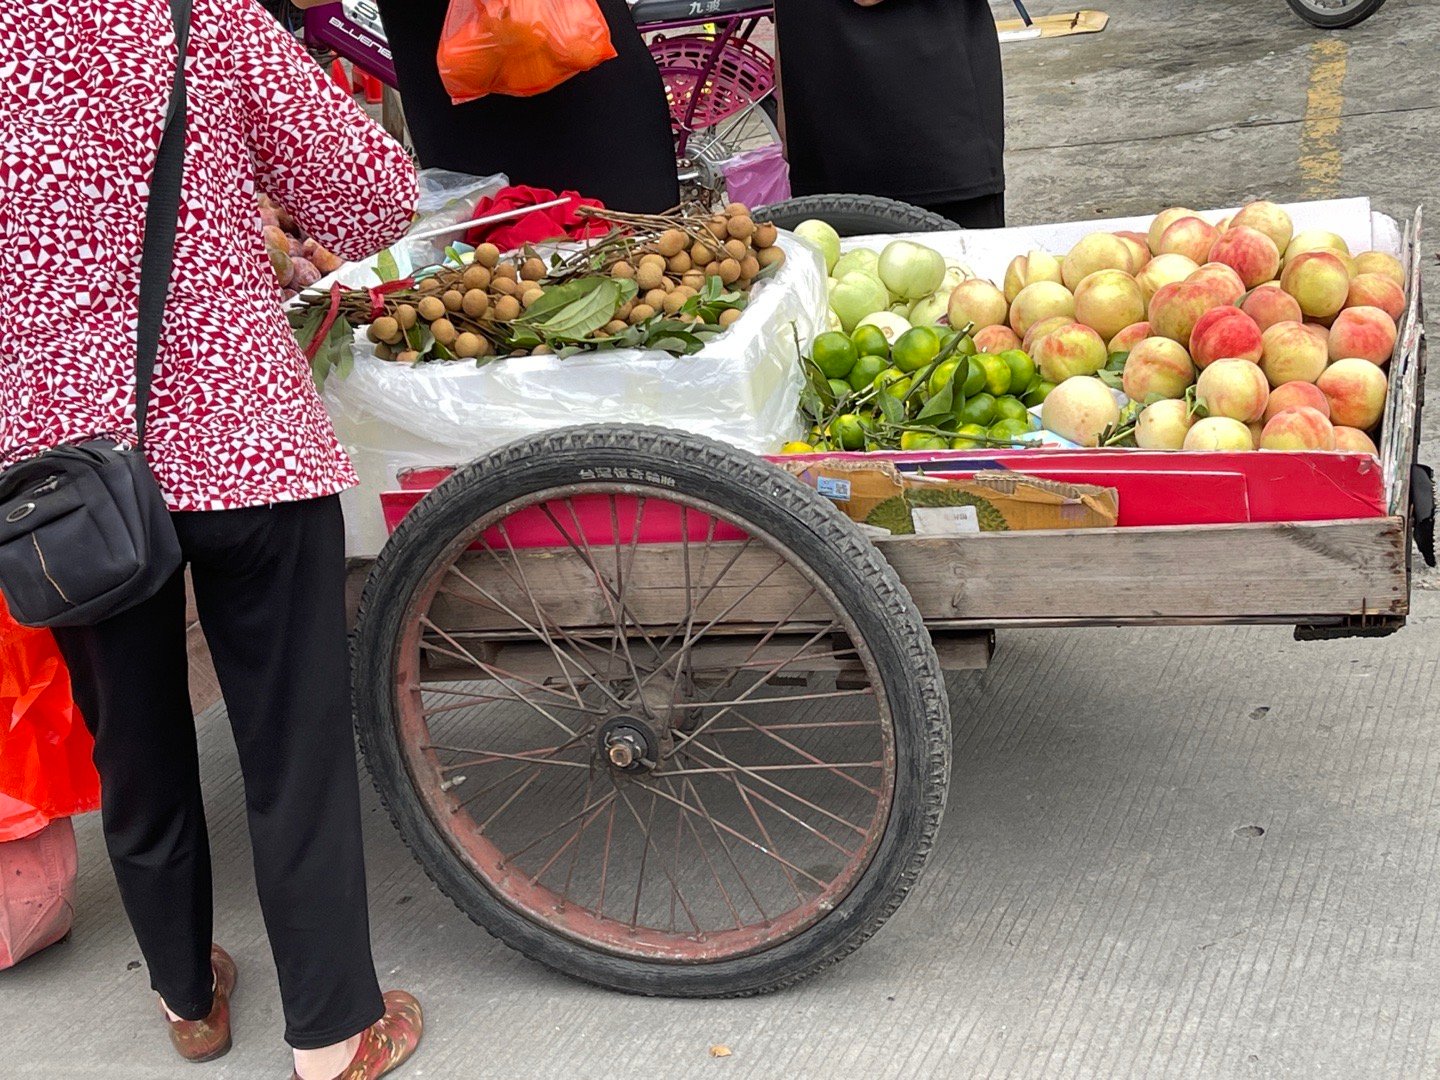 三轮车卖水果摆放图片图片